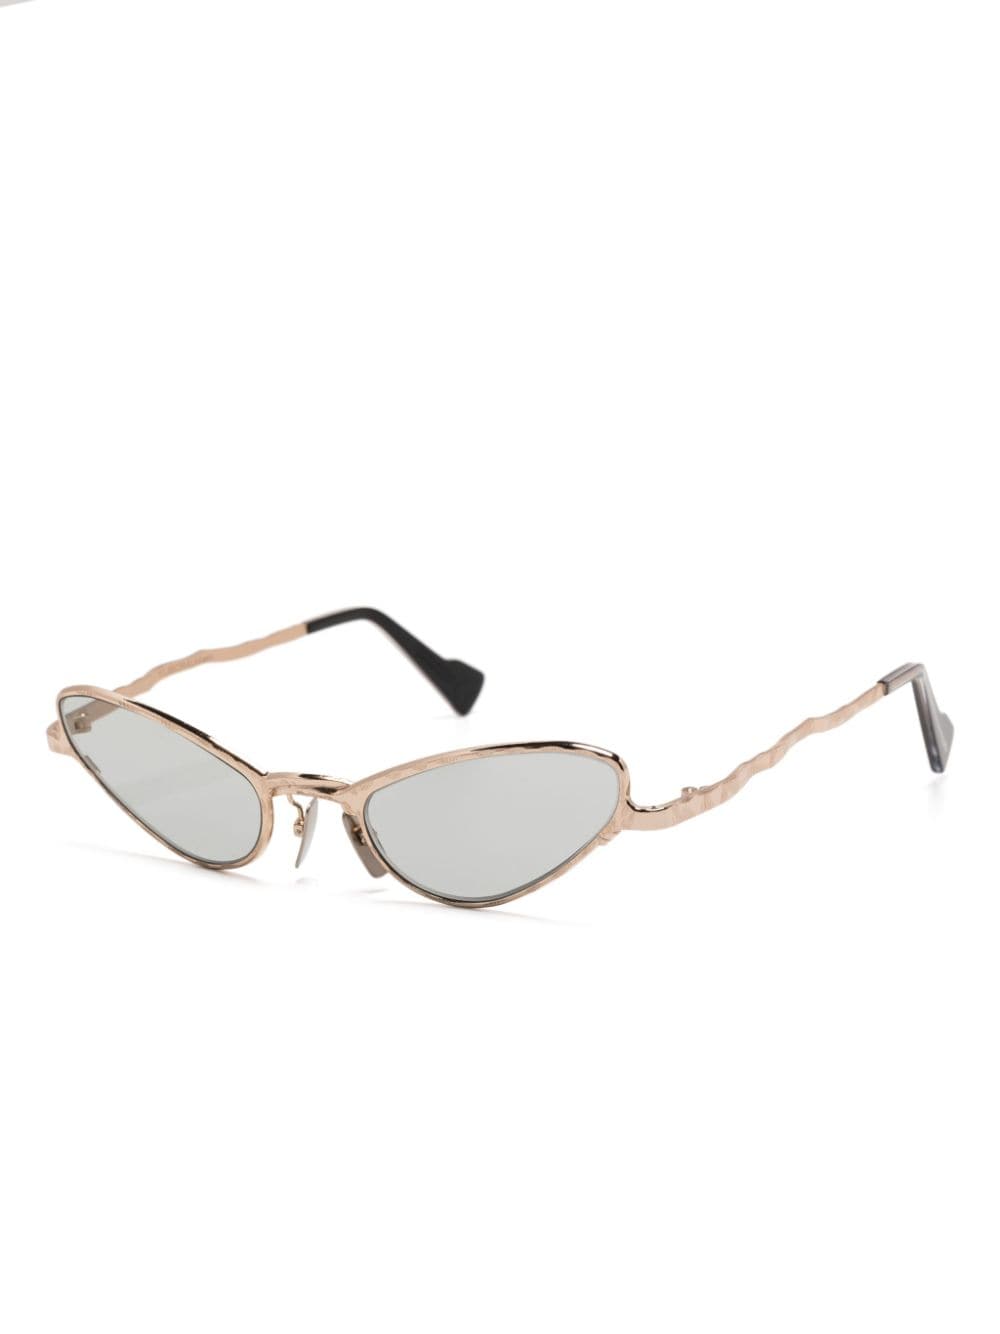 Kuboraum Z22 cat-eye sunglasses - Goud